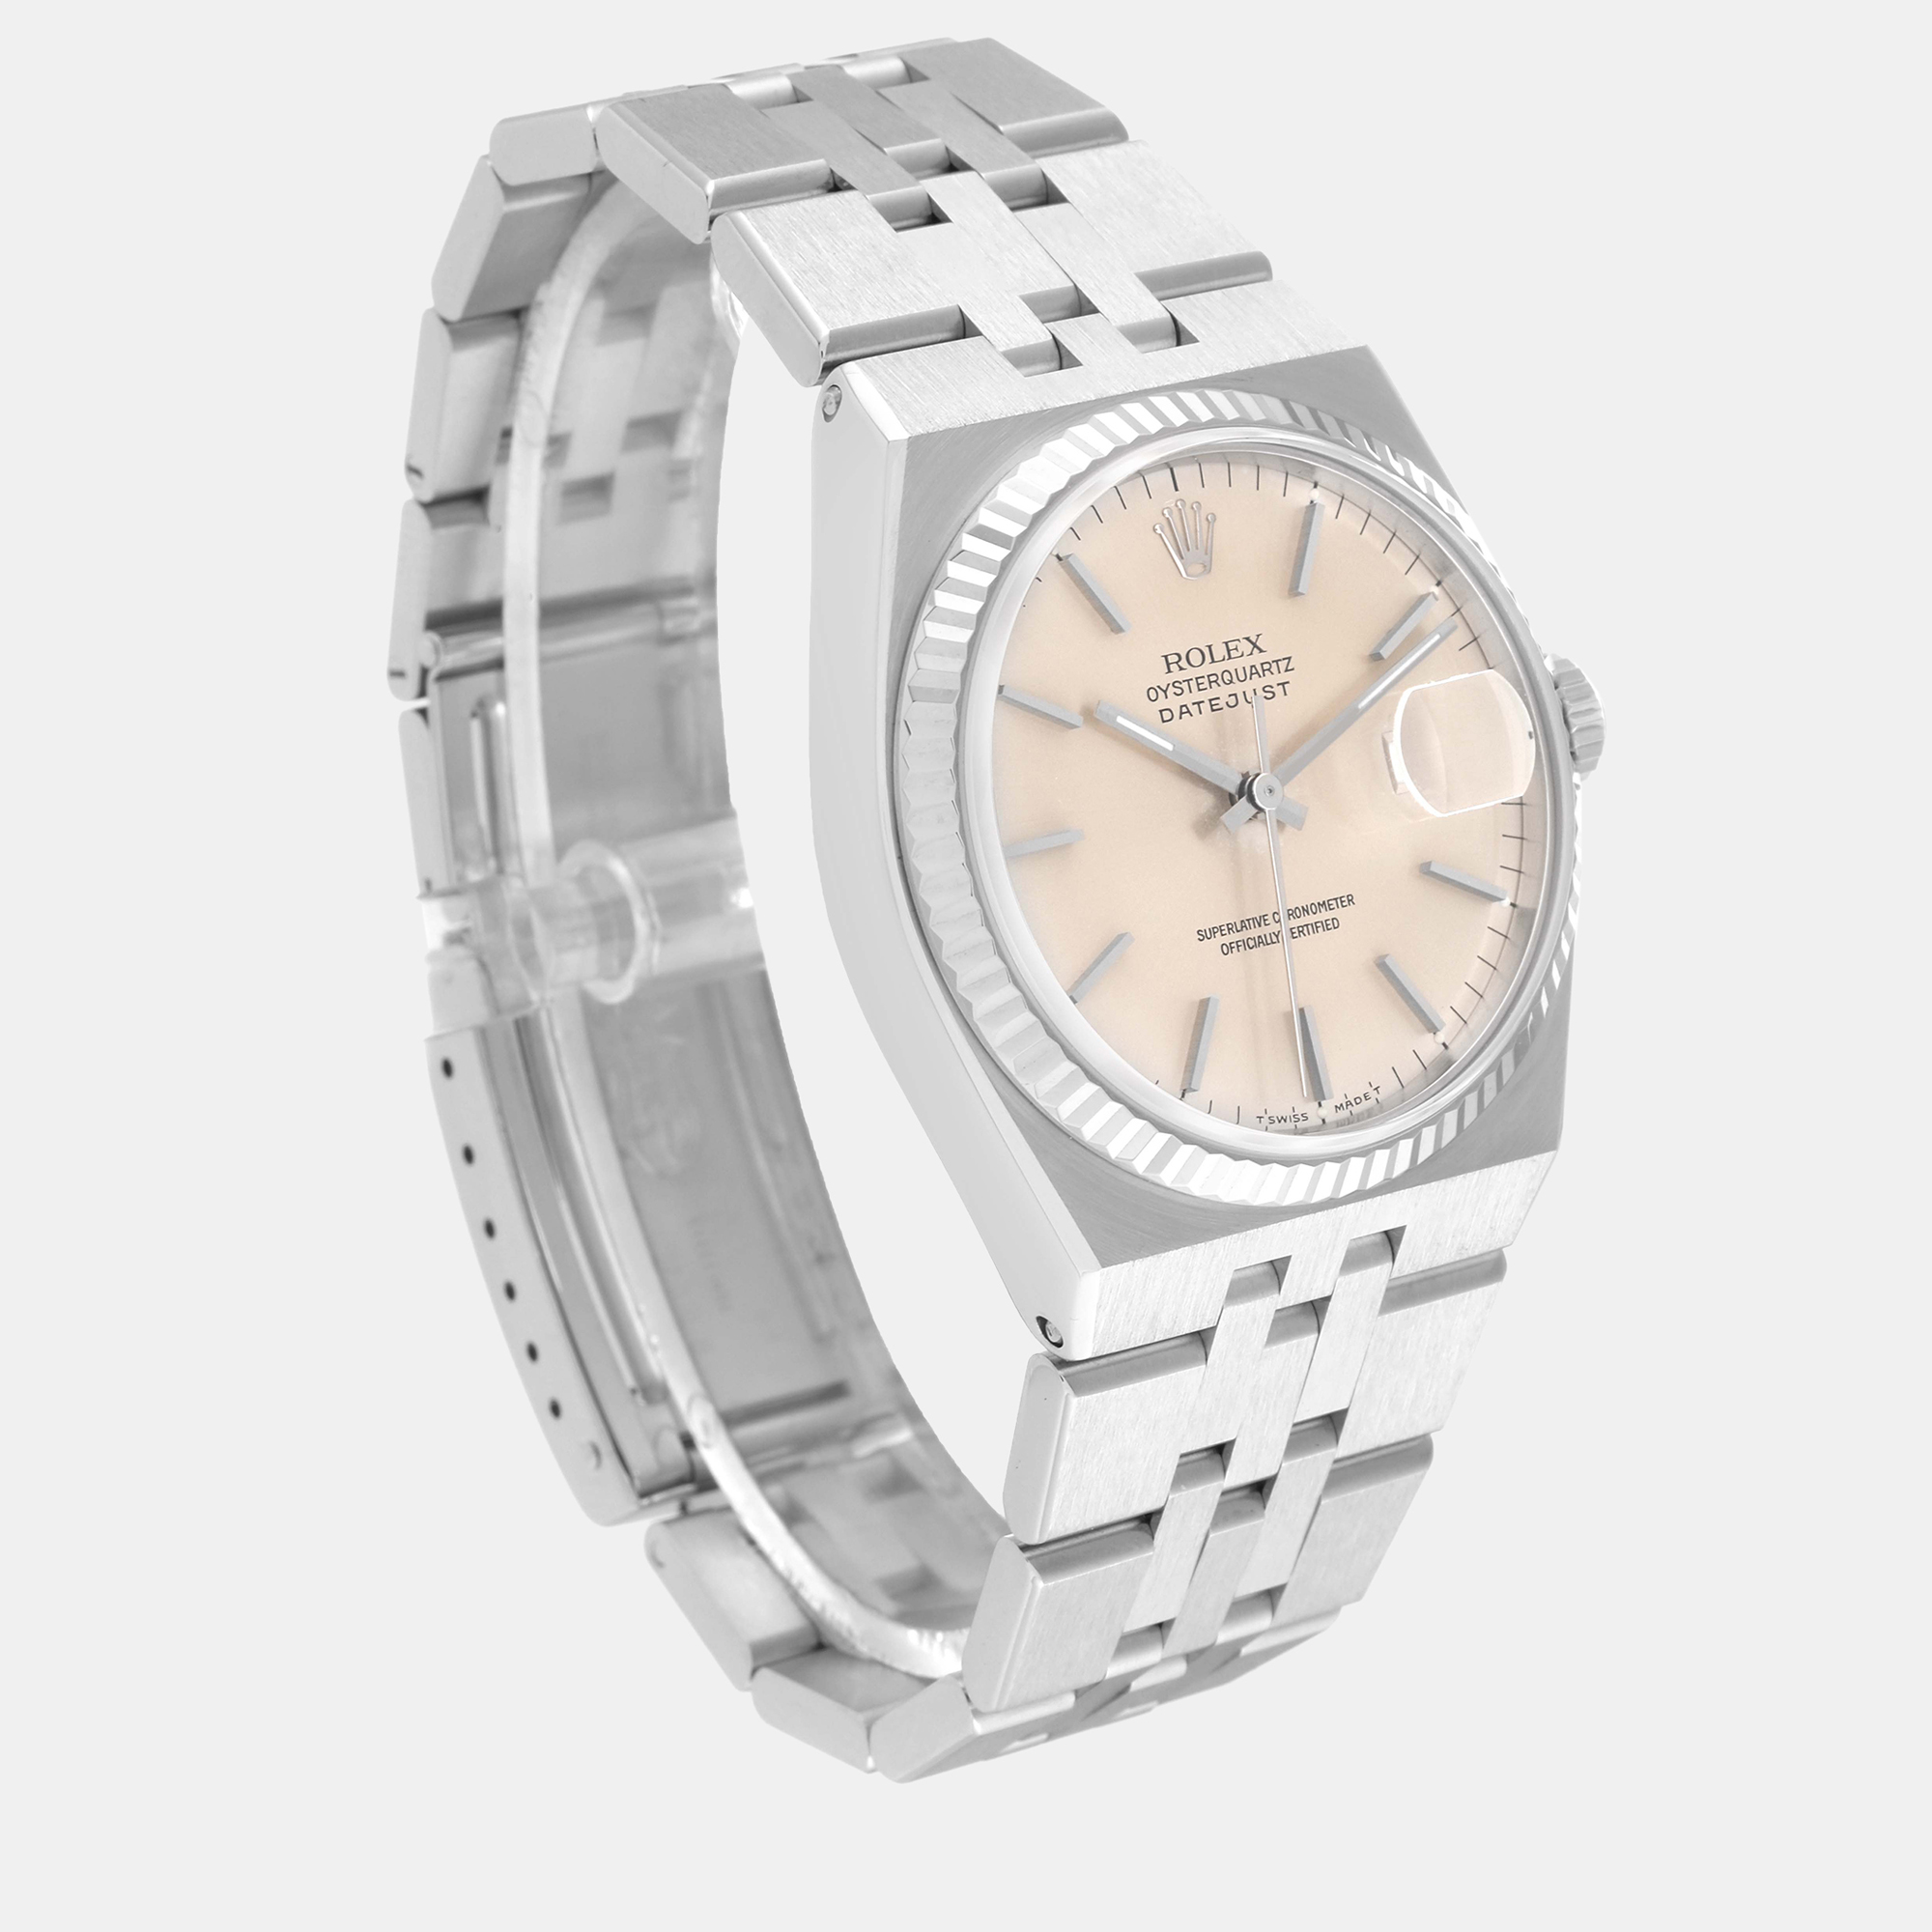 Rolex Oysterquartz Datejust Steel White Gold Men's Watch 17014 36 Mm